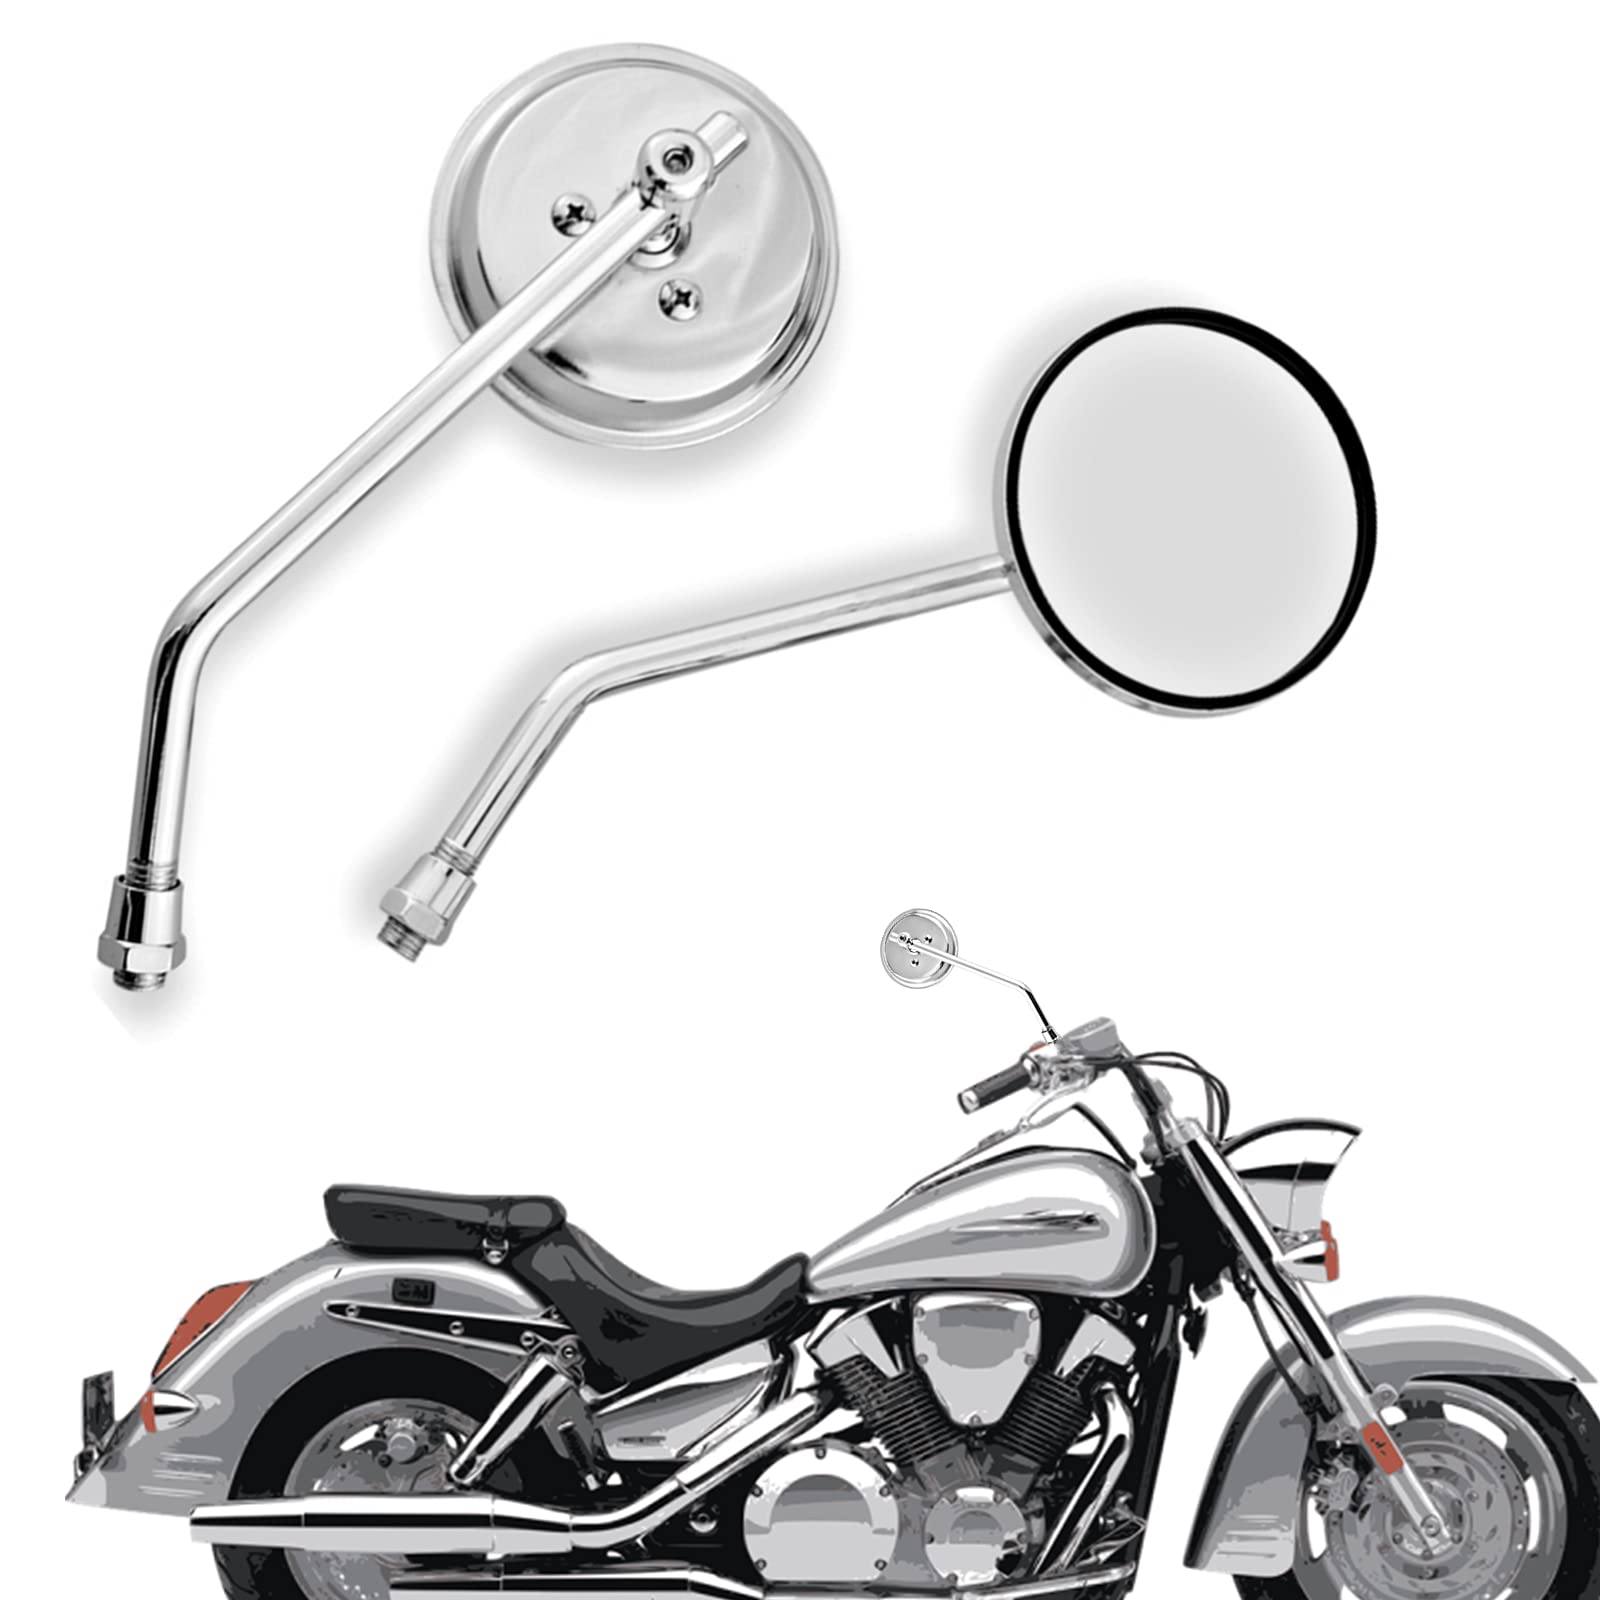 3" Runder Chrom Motorrad Rückspiegel mit 10mm Schrauben, Universal Lenker Motorrad Seitenspiegel Set für Roller ATVs Cafe Racer Dirt Bikes von APEBAZY